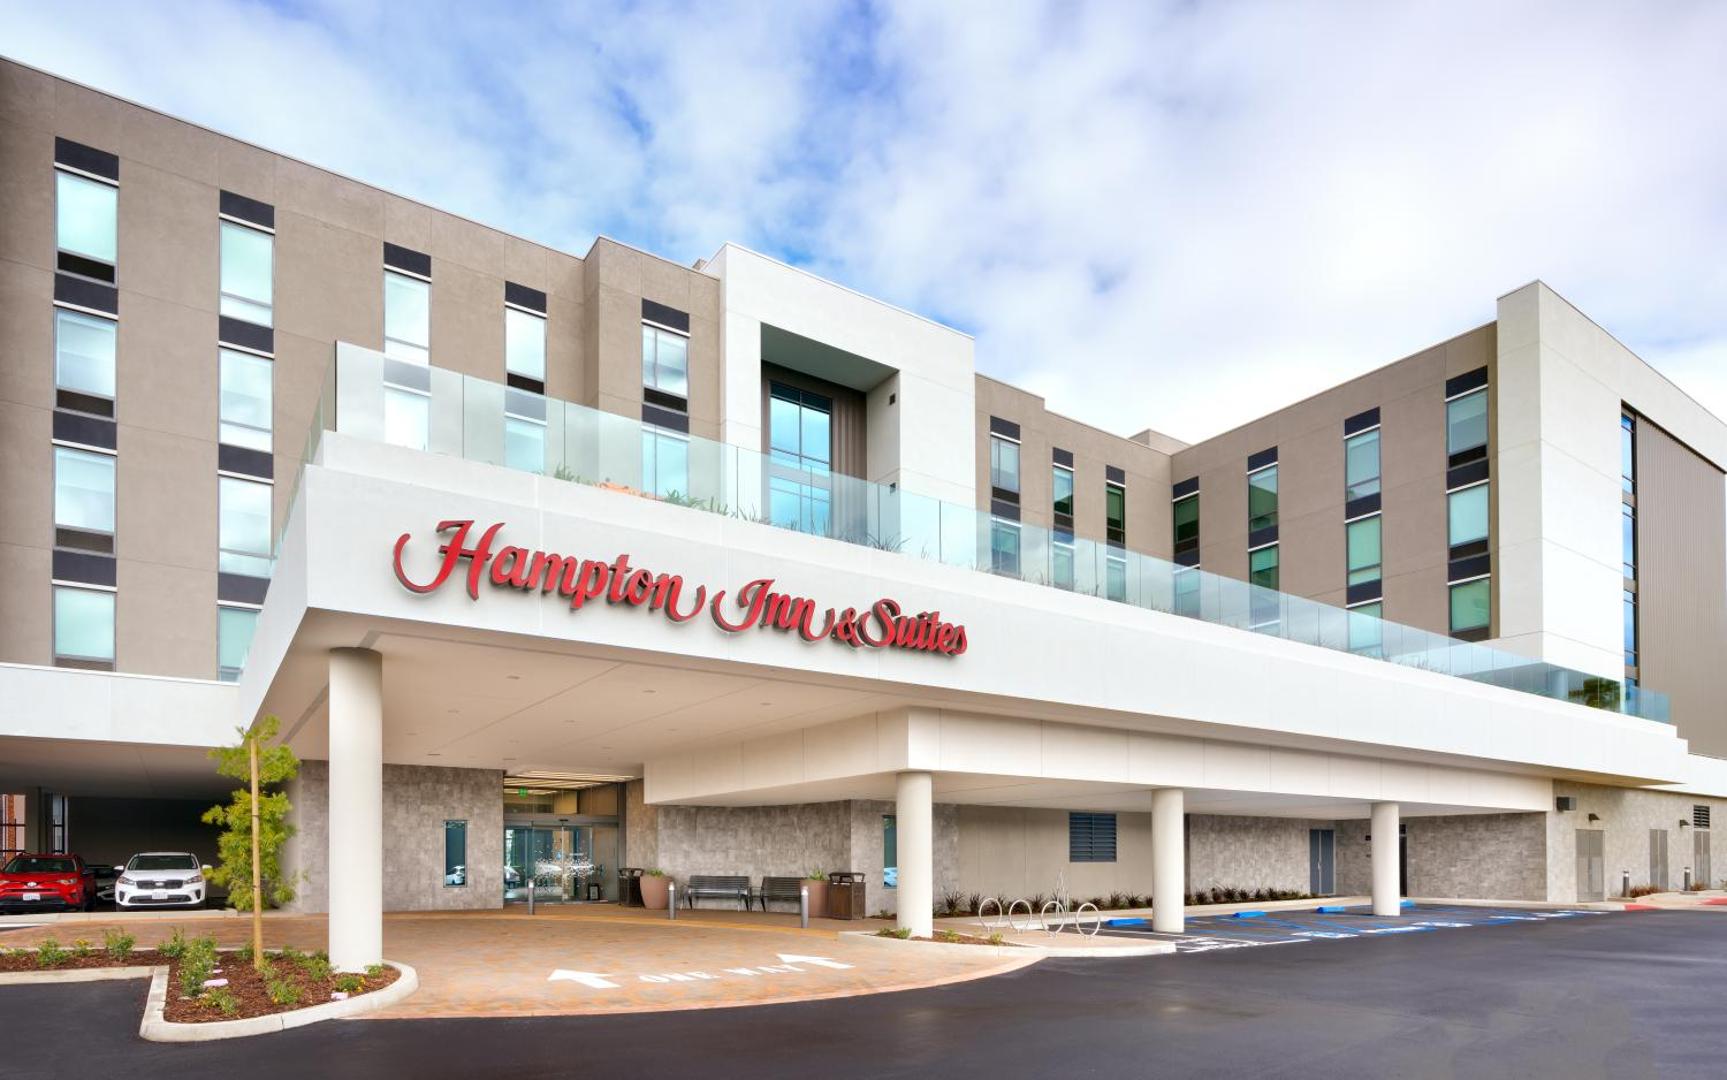 Hampton Inn & Suites Anaheim Resort Convention Center